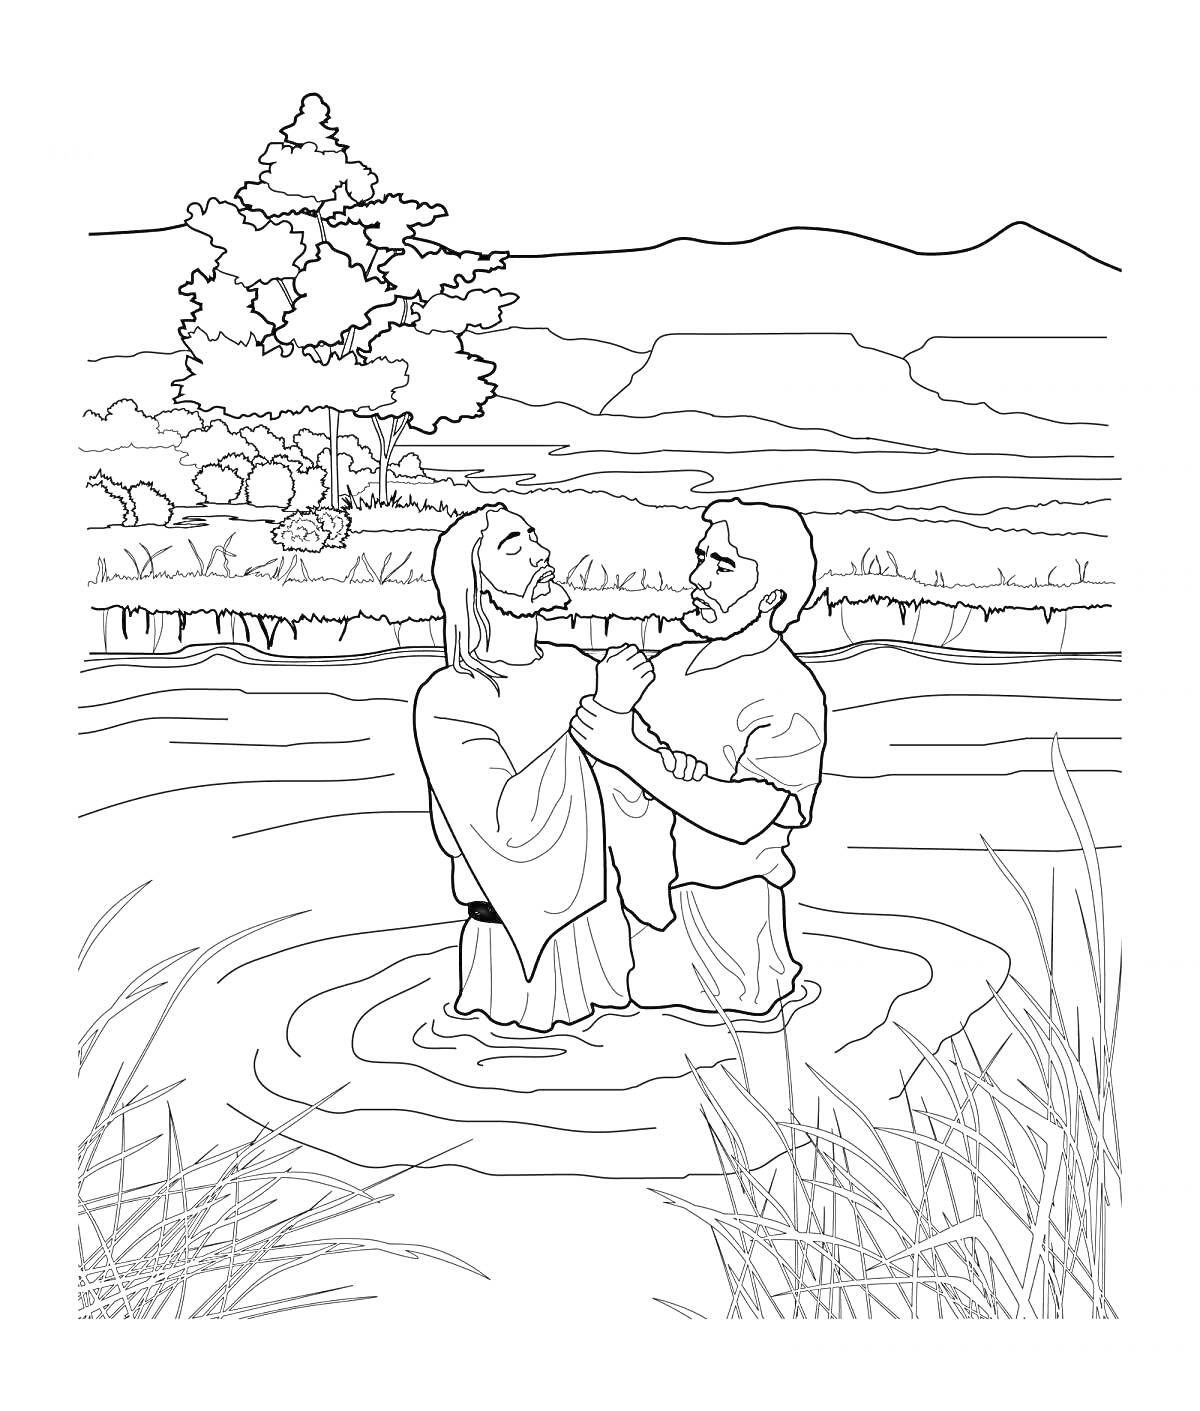 Крещение Господне, двое взрослых мужчин стоят в воде, один крестит другого, берег, дерево, горы, кусты и трава вокруг